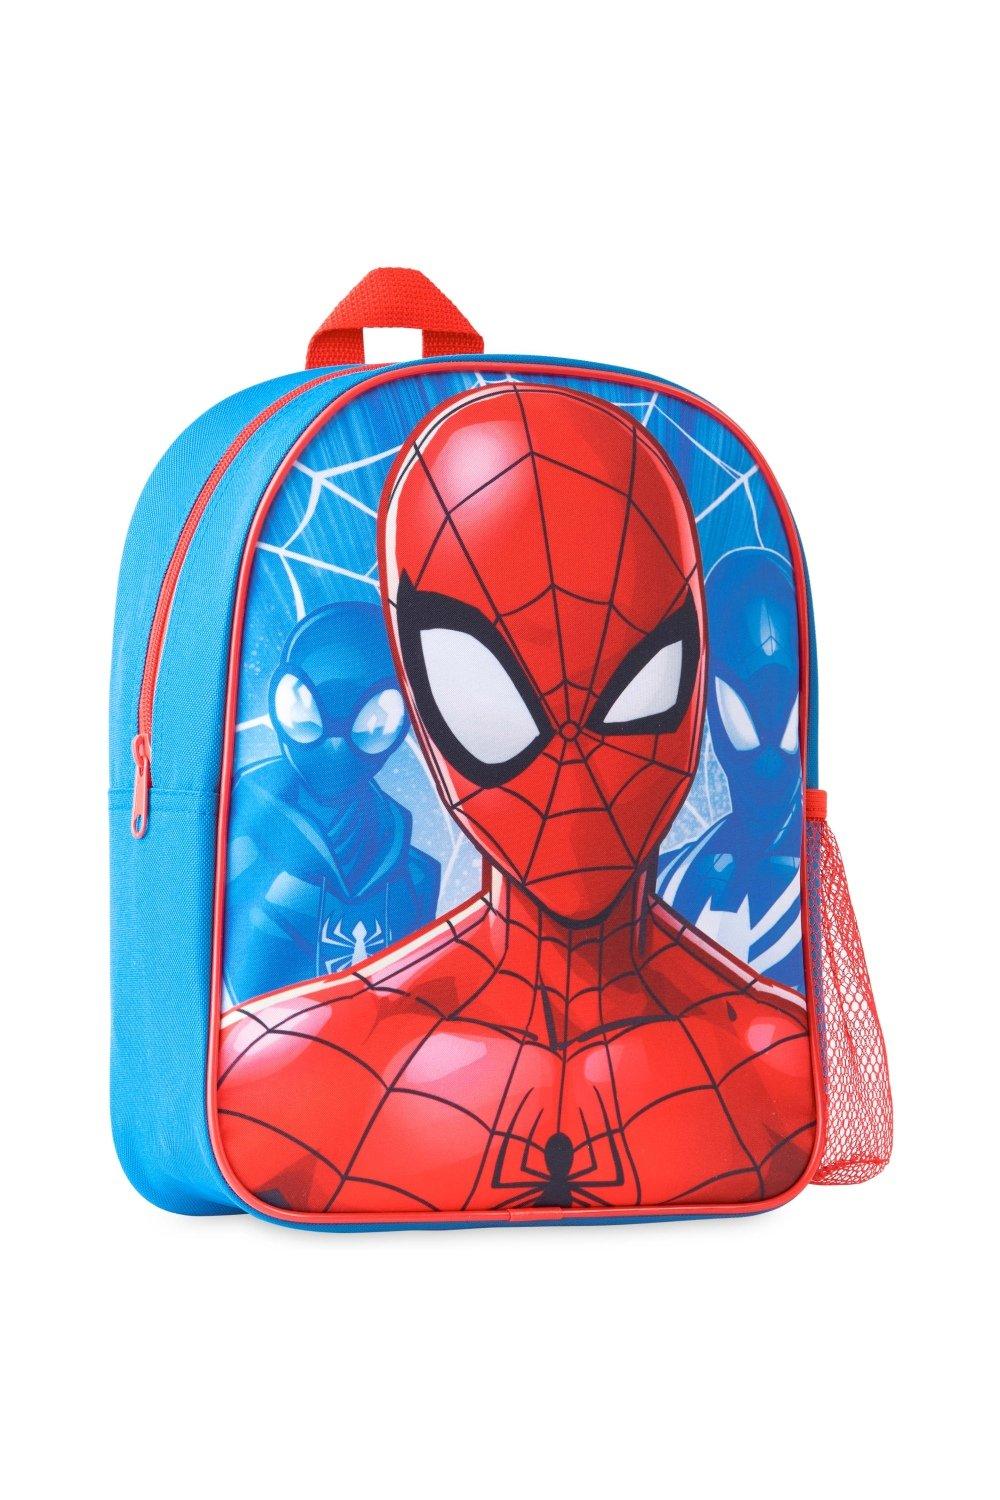 Школьный рюкзак Человека-паука Marvel, мультиколор новый рюкзак с единорогом для девочек школьные ранцы розового цвета для принцесс детские ранцы ранцы для детского сада школьные ранцы